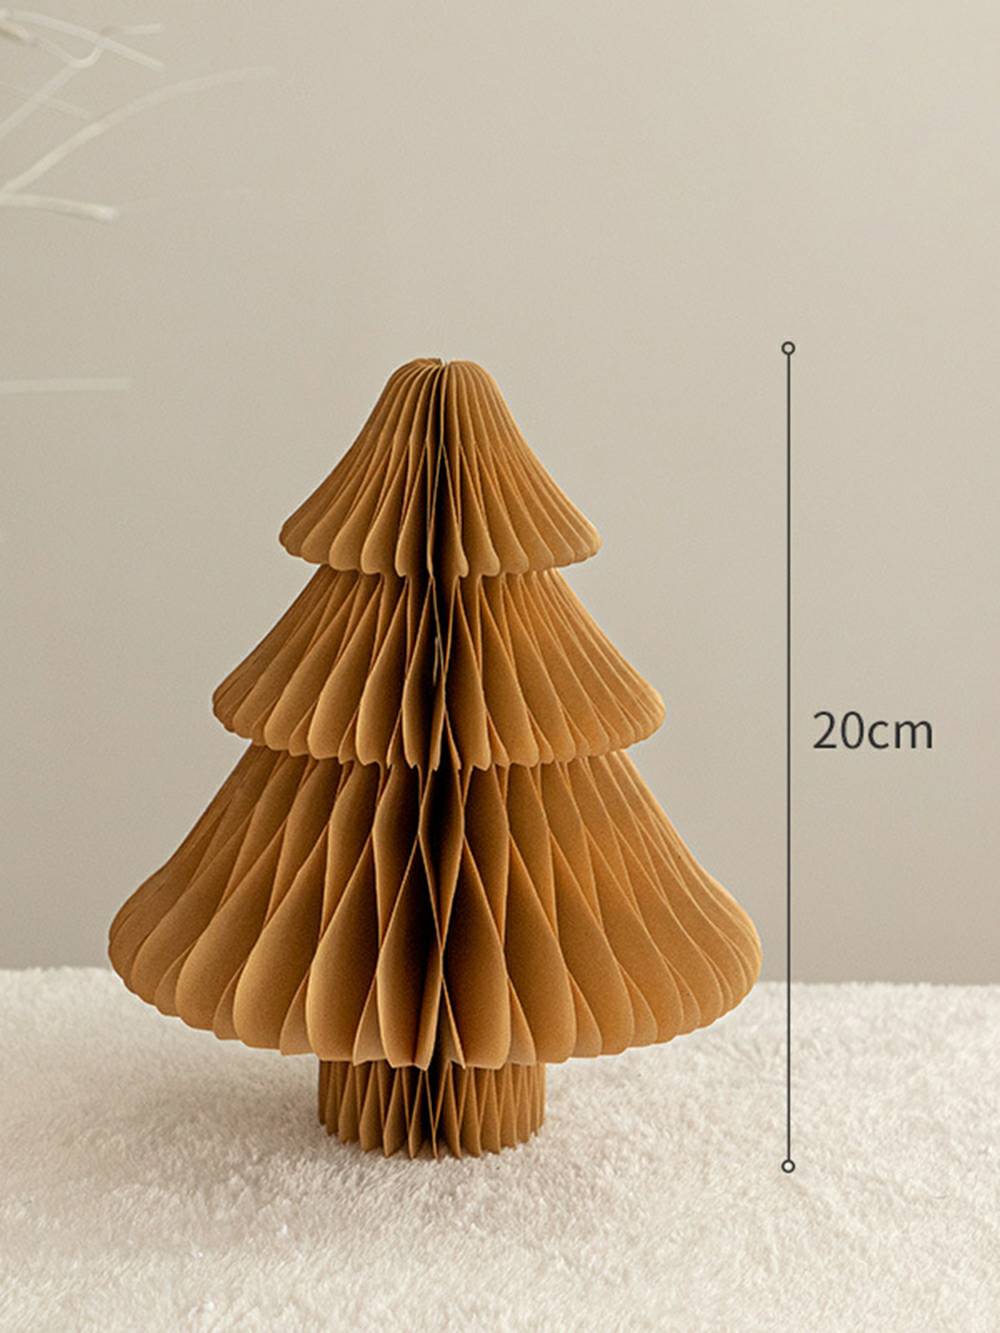 Trekkspill stil papir juletre honeycombs figurer